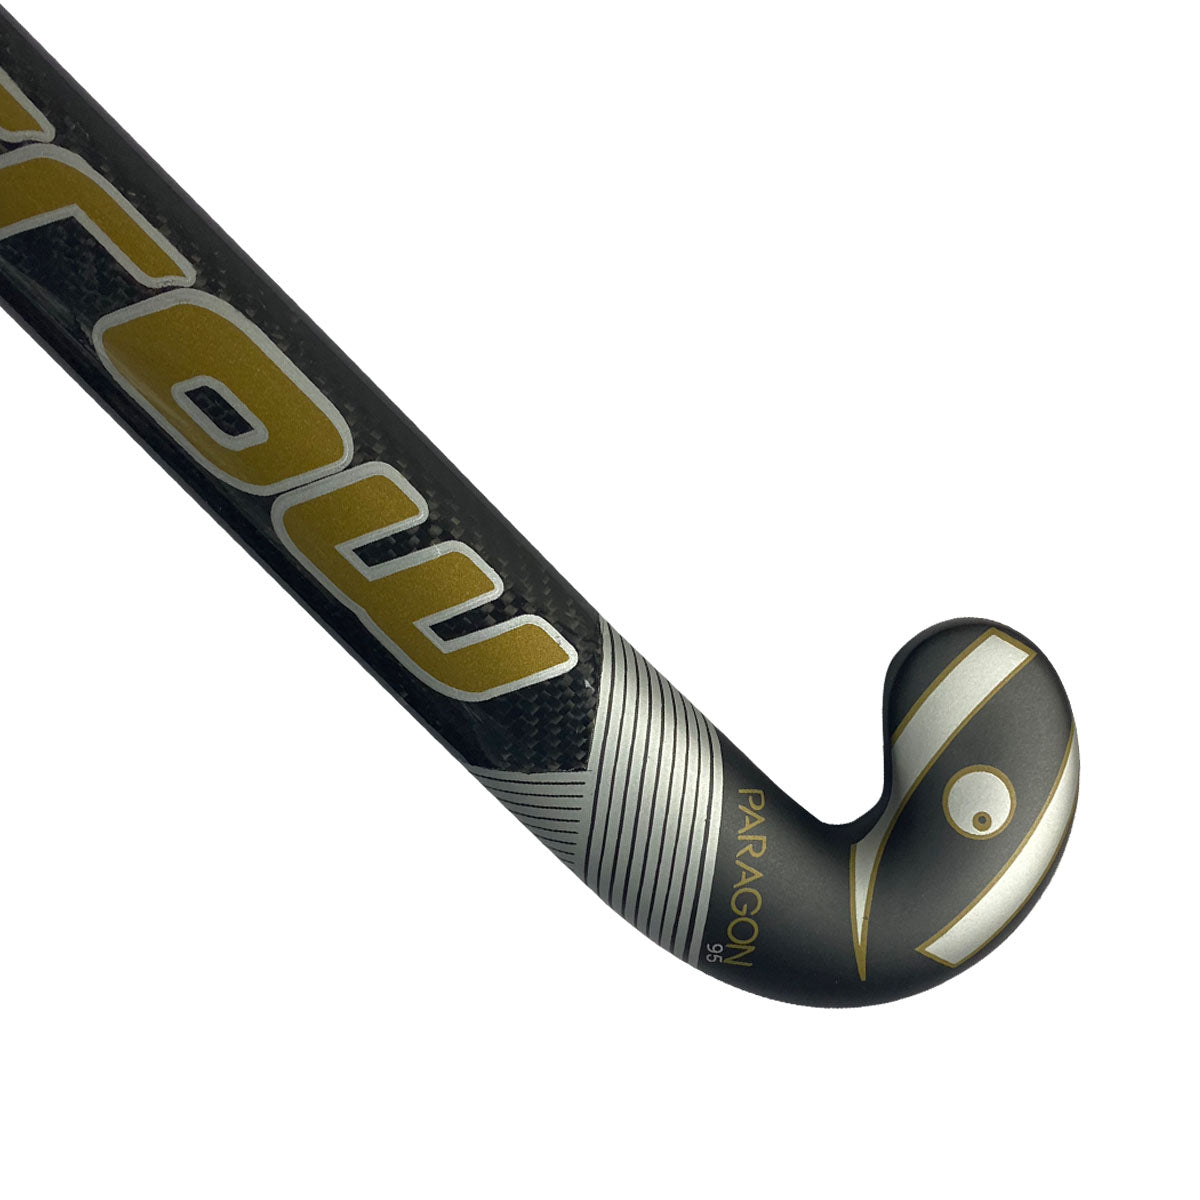 Paragon 95 Field Hockey Stick - Harrow Sports